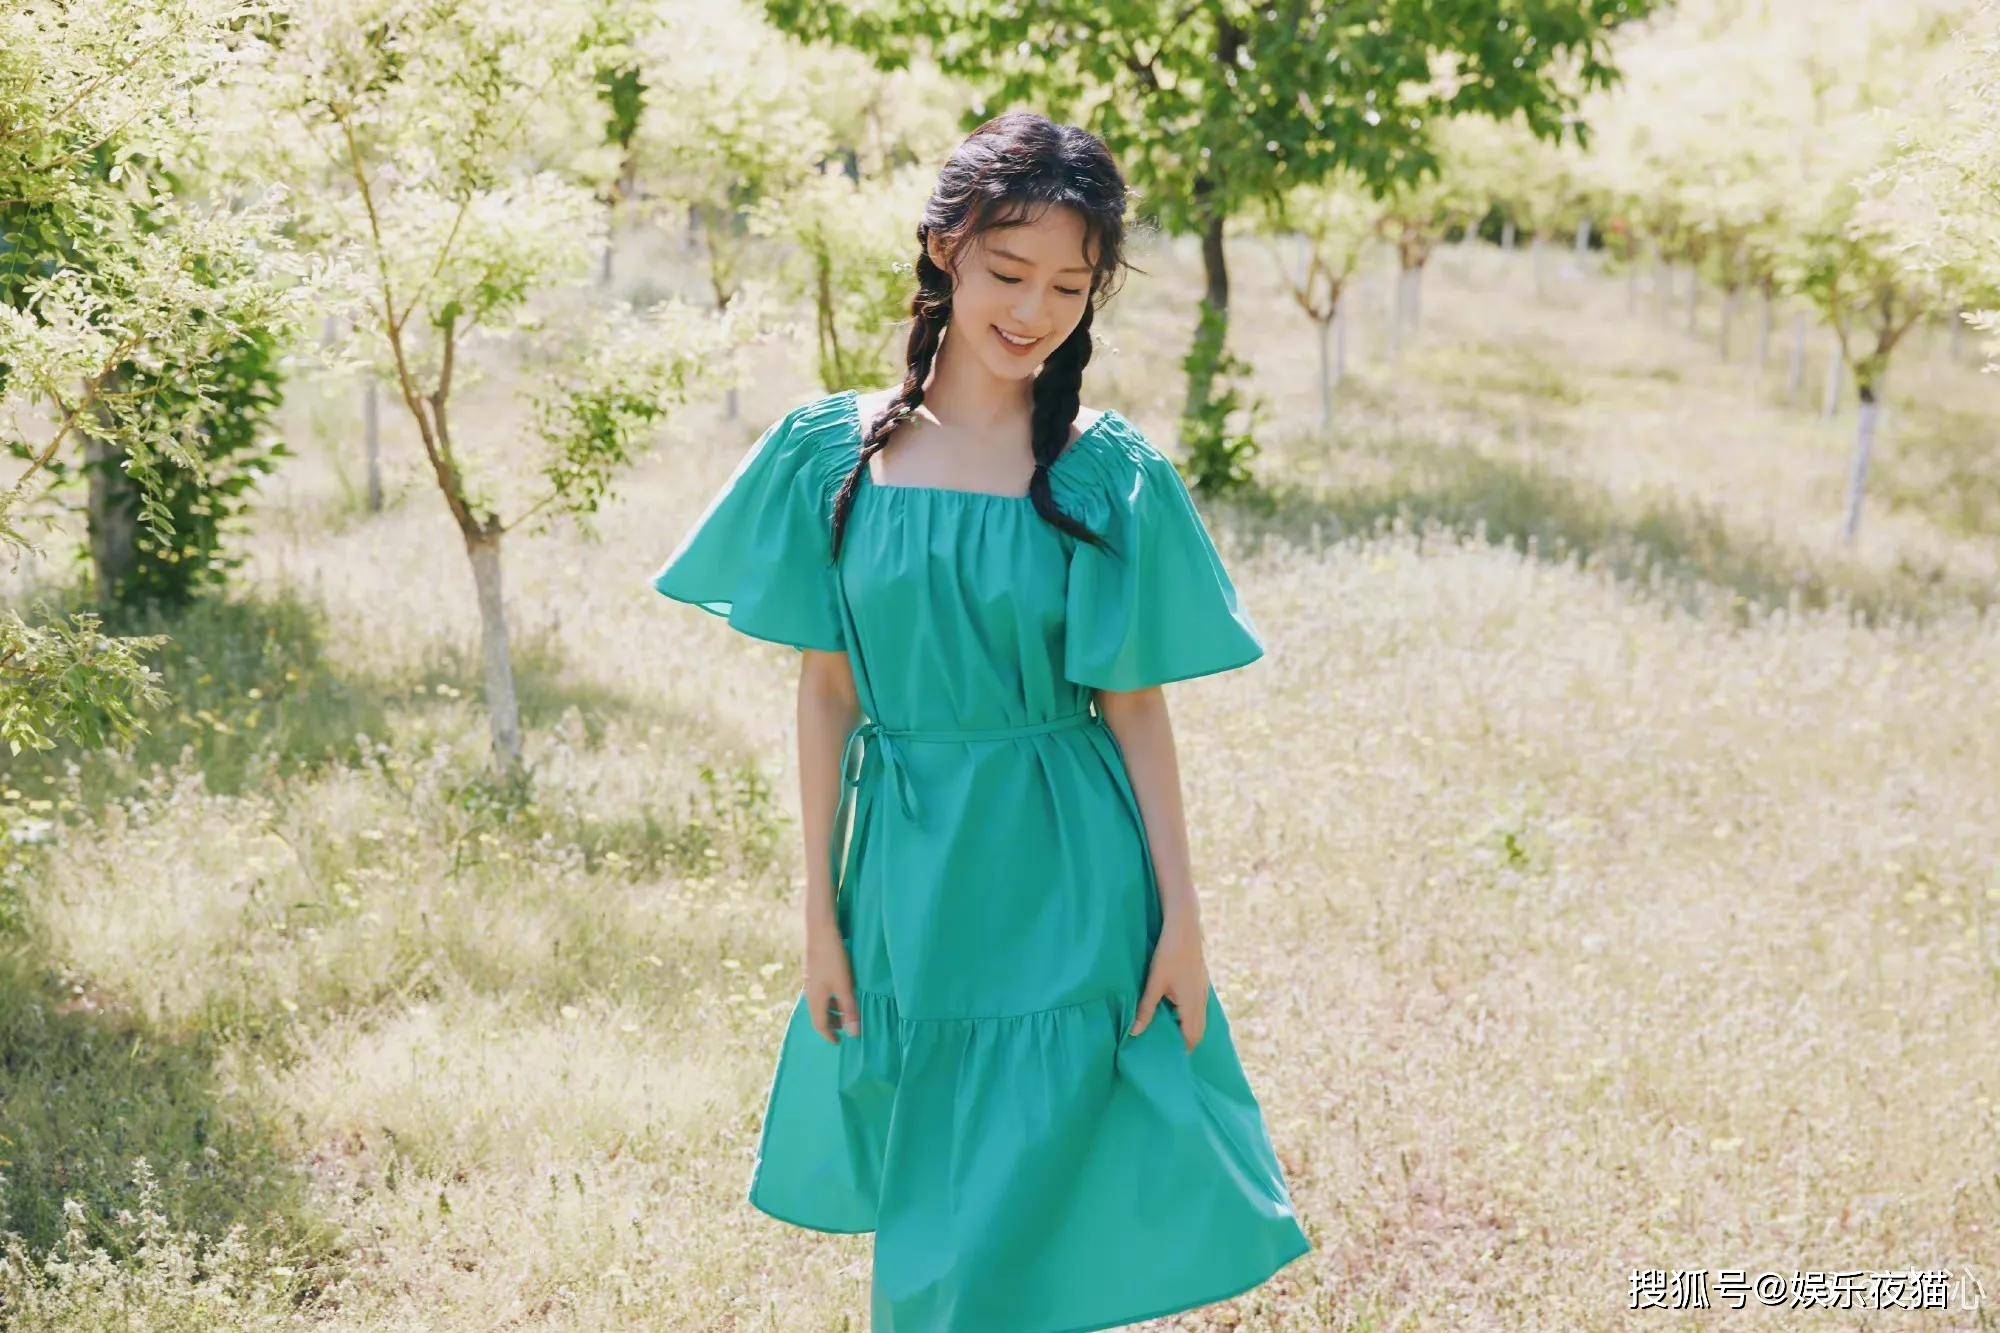 李沁穿一袭绿色连衣裙拍户外写真笑容甜蜜少女十足-搜狐大视野-搜狐新闻